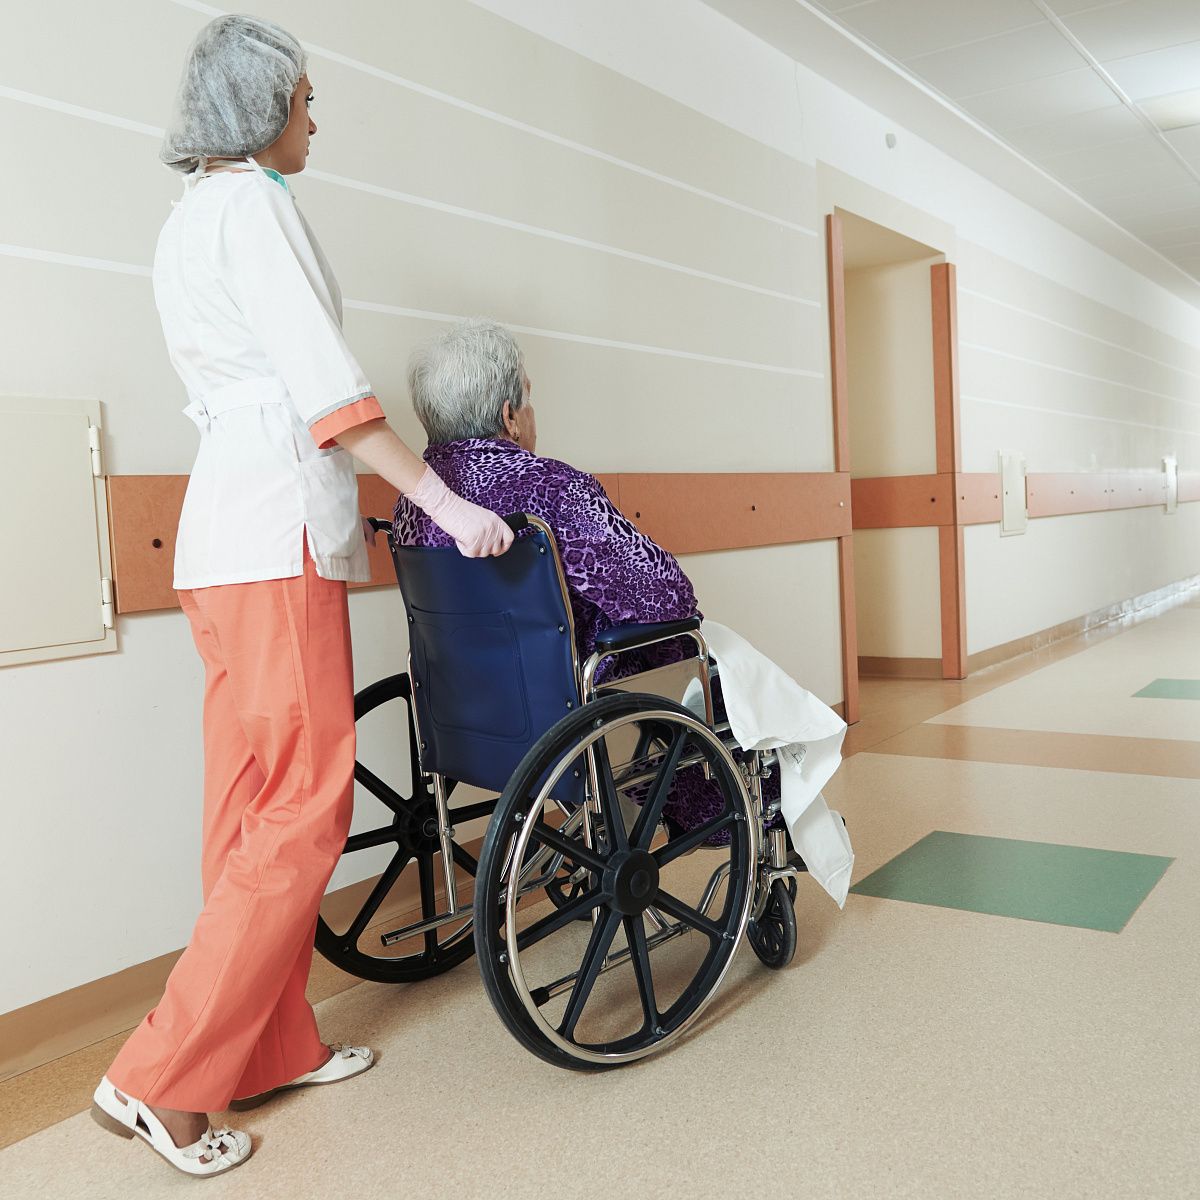 Стационарное обслуживание инвалидов и престарелых. Кресло каталка для перемещения пациента. Транспортировка пациента на кресле каталке. Инвалидная коляска в больнице.